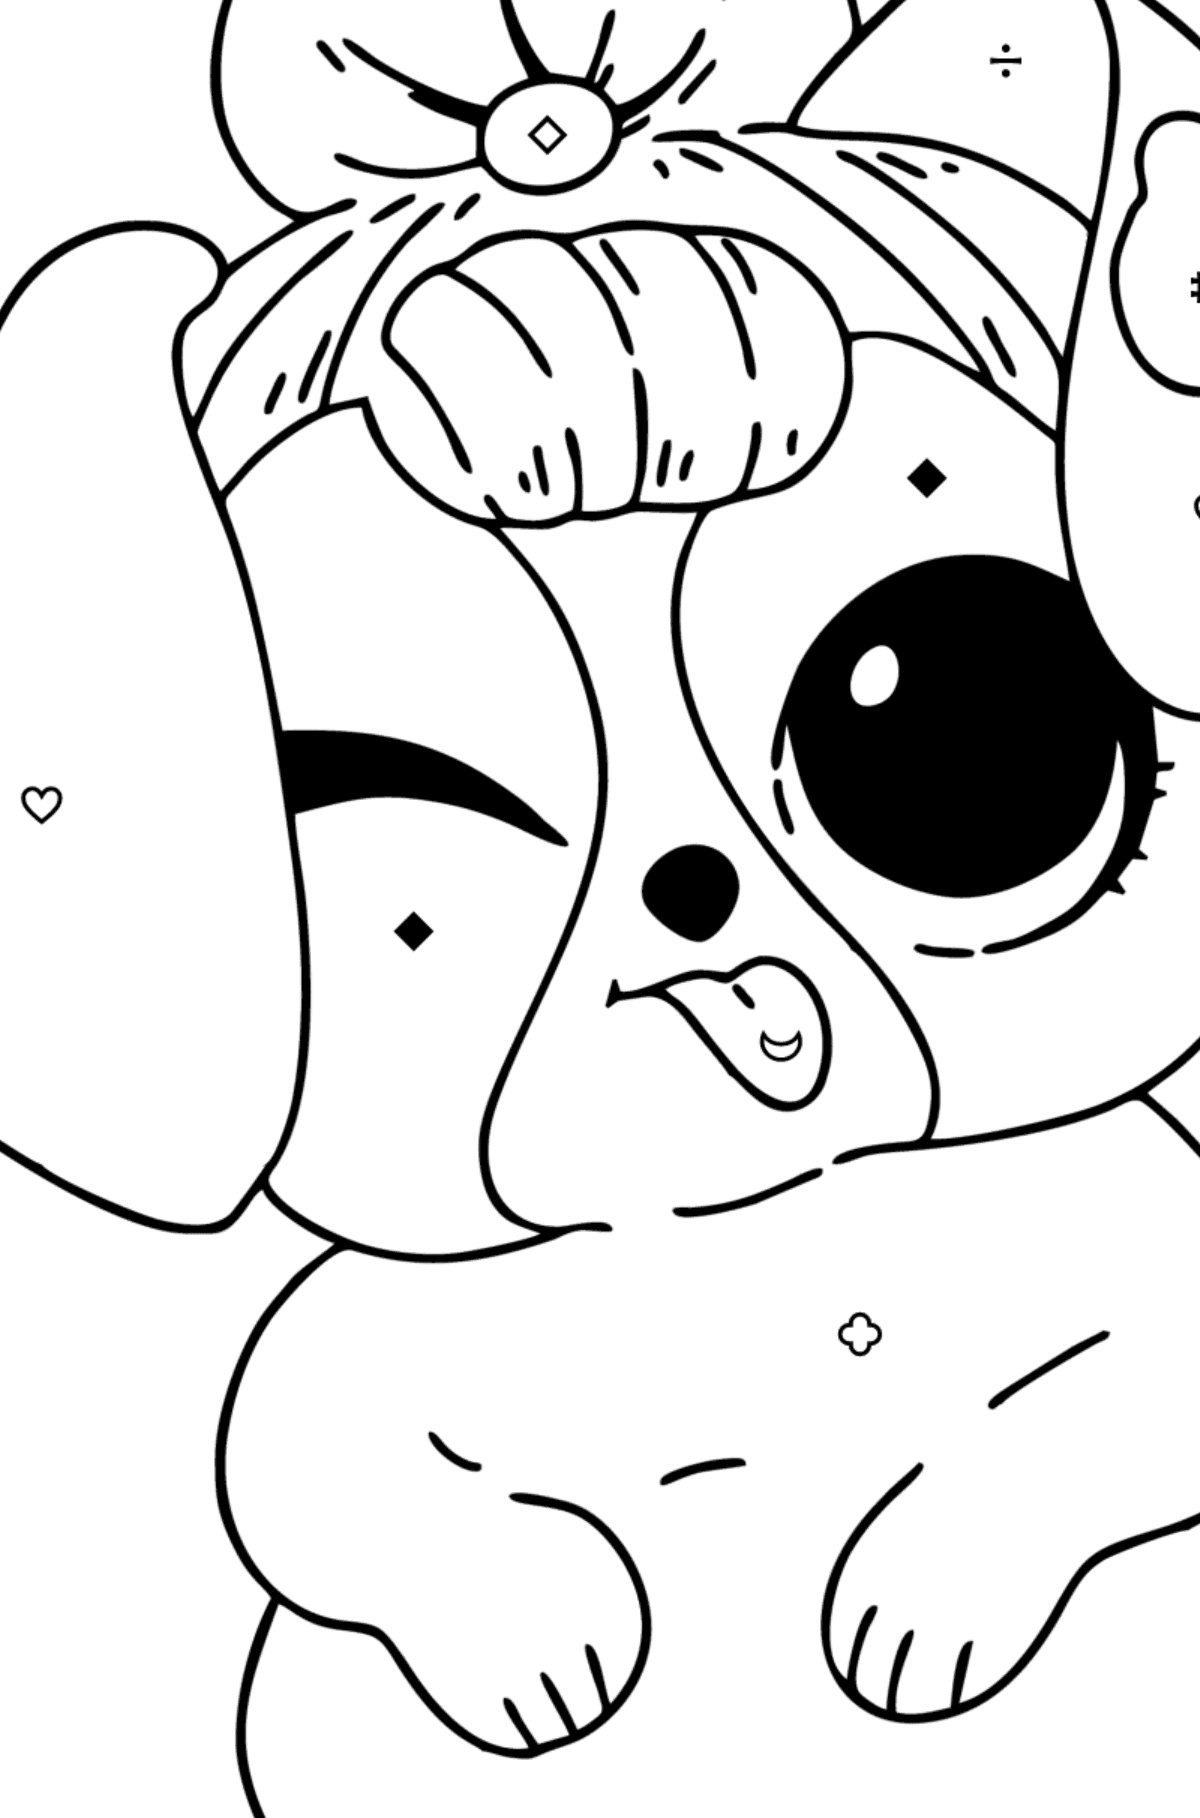 Boyama sayfası Oyuncak bebek Pet Cute Puppy de LOL Surprise - Sembollere ve Geometrik Şekillerle Boyama çocuklar için